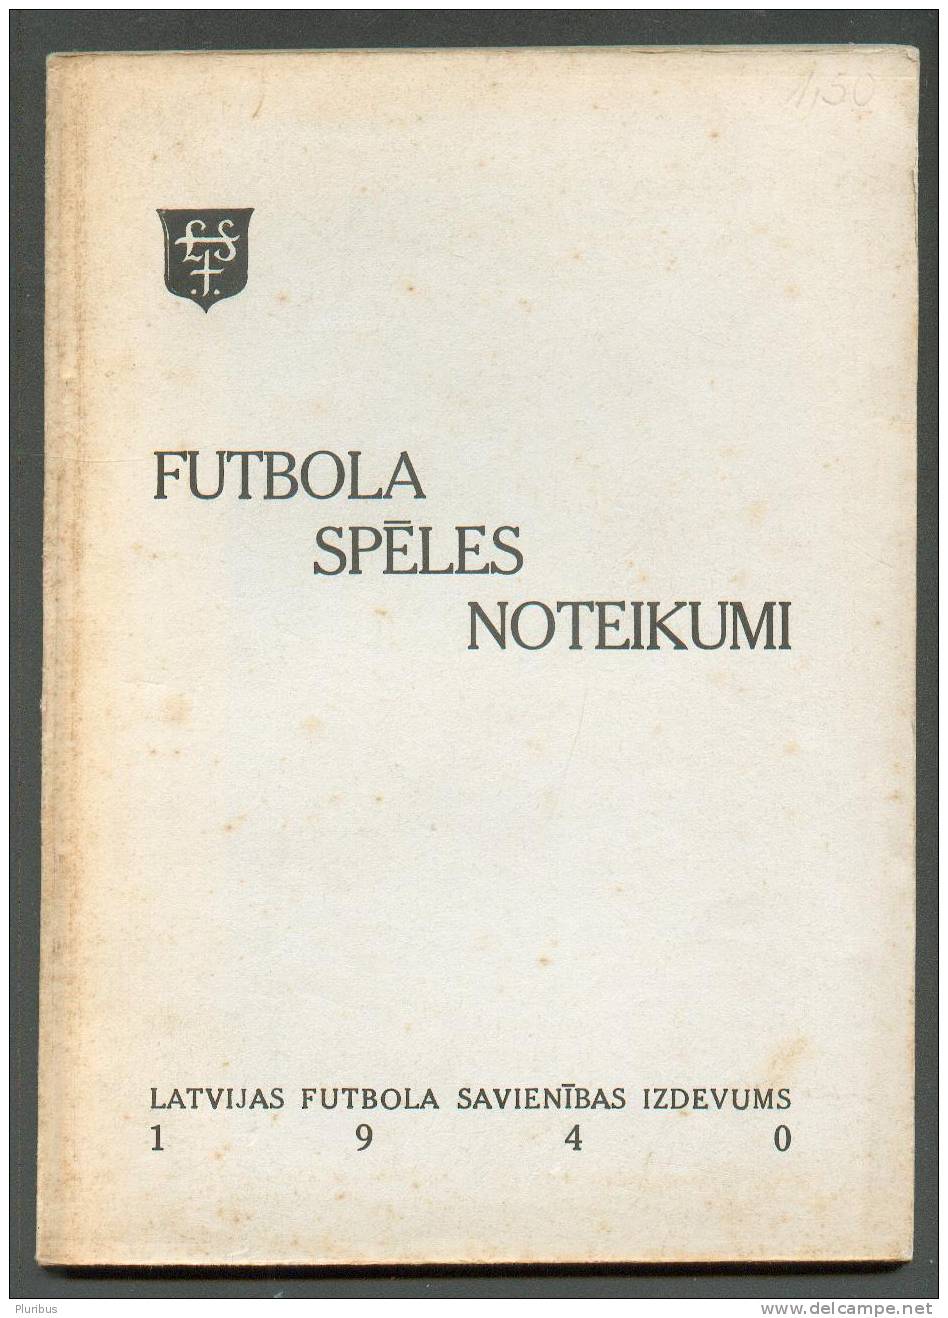 RARE! 1940 LATVIA SOCCER Football MANUAL - Old Books